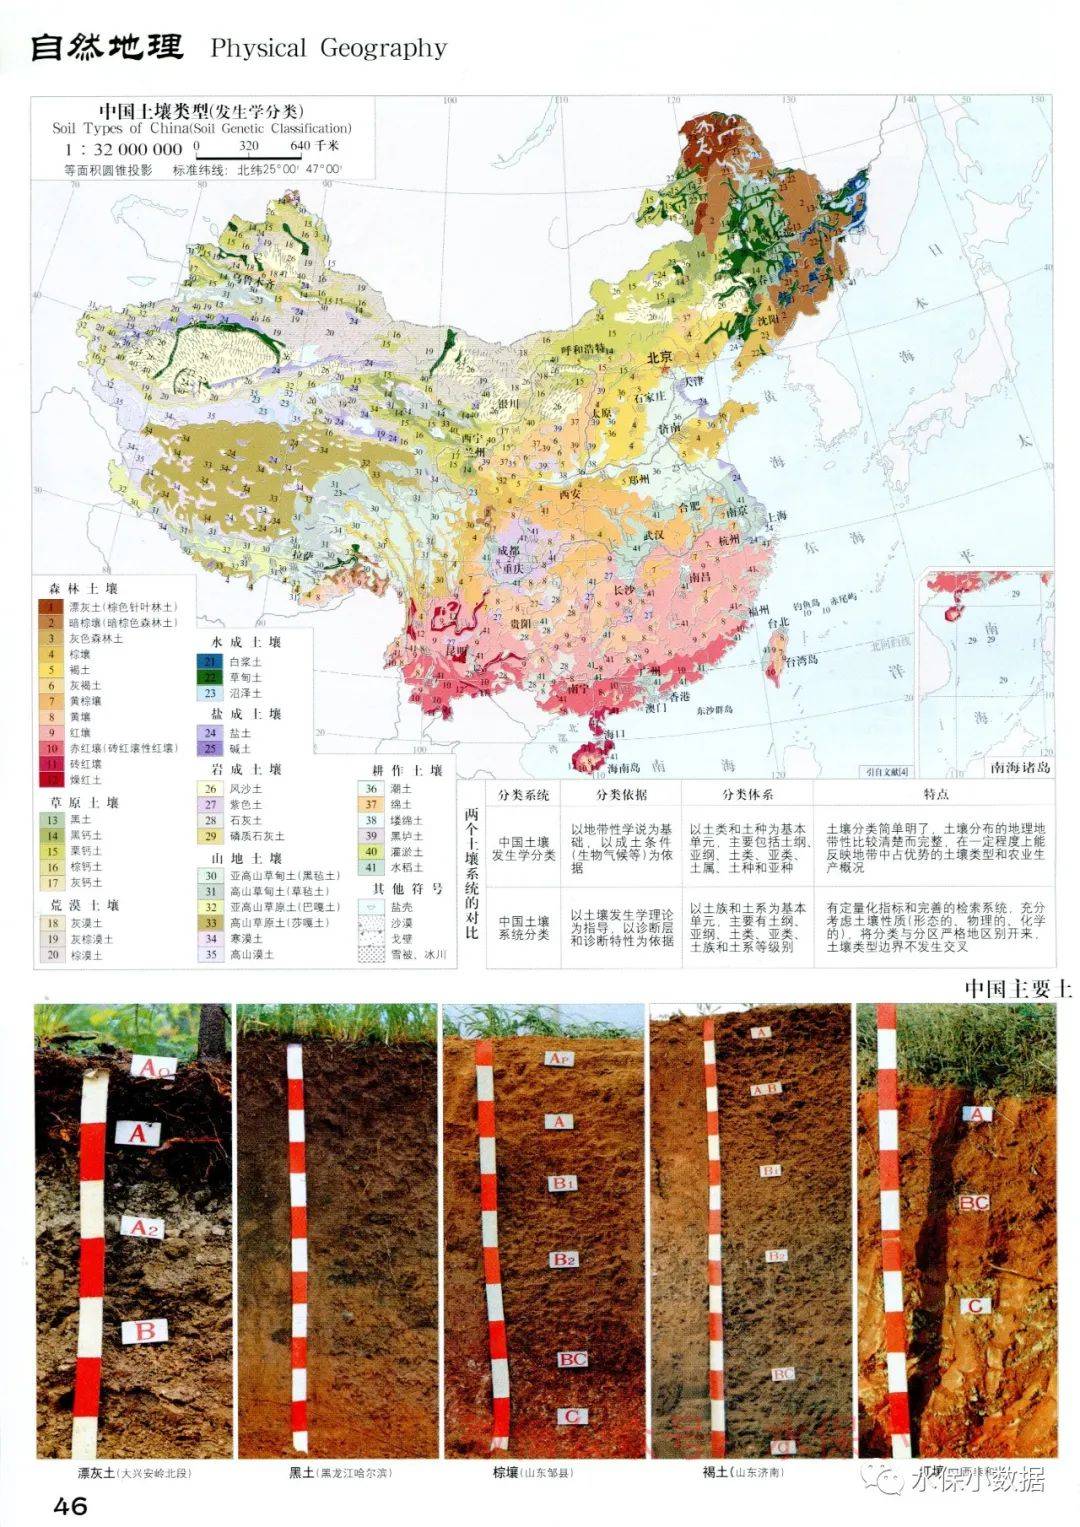 全国地质,水文,土壤,植被等自然资源区划图(d08)_中国